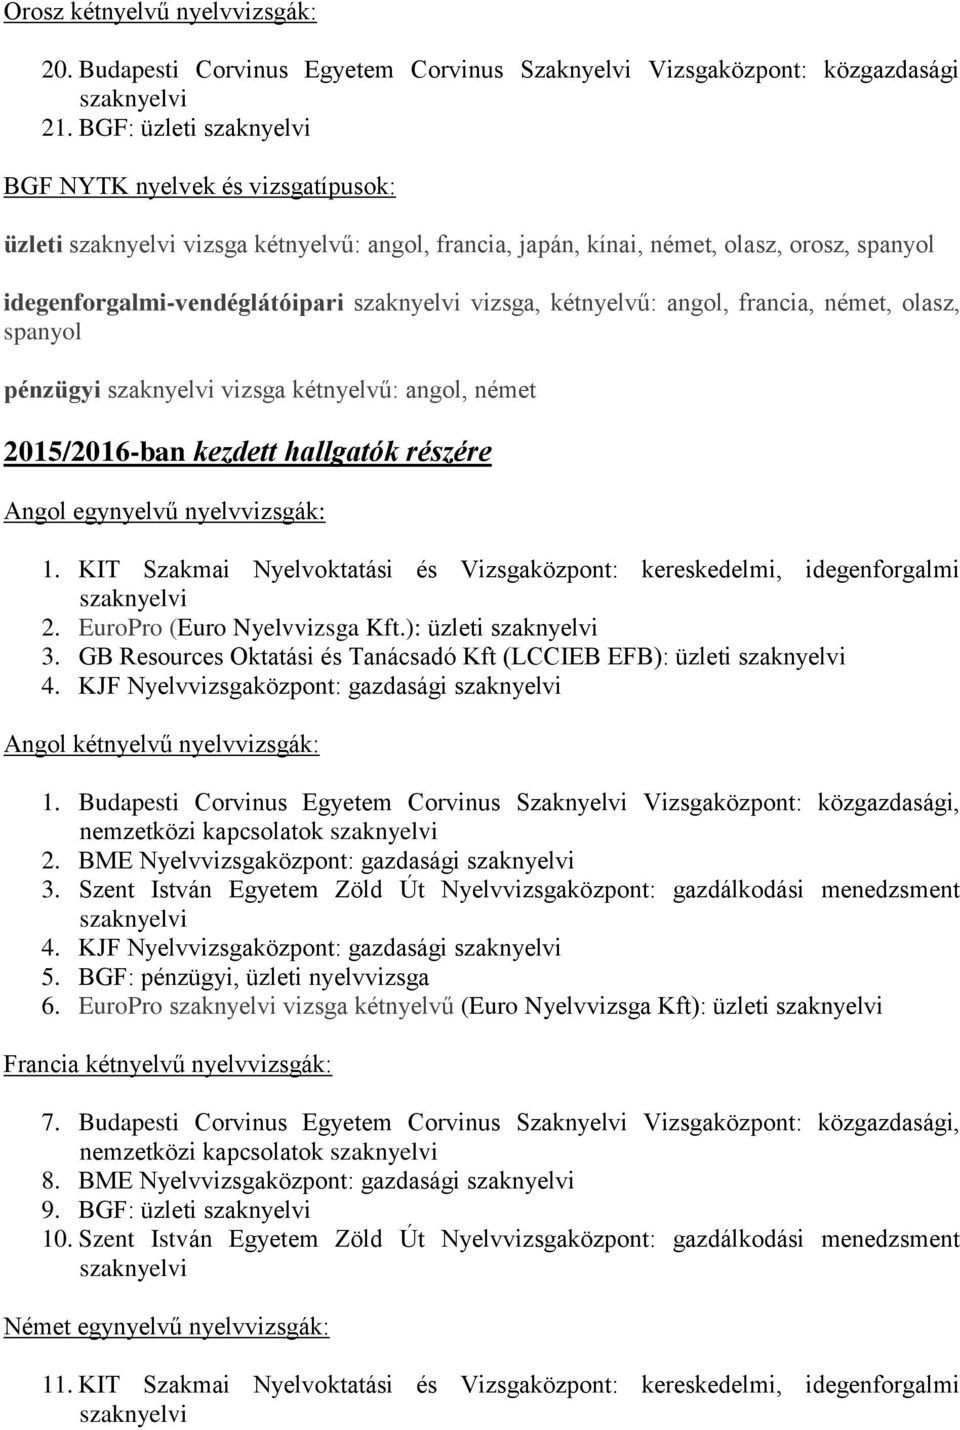 A BGF PSZFK-n elfogadott középfokú (csak C ) szakmai nyelvvizsgák listája  (A+B=C ld. - PDF Free Download